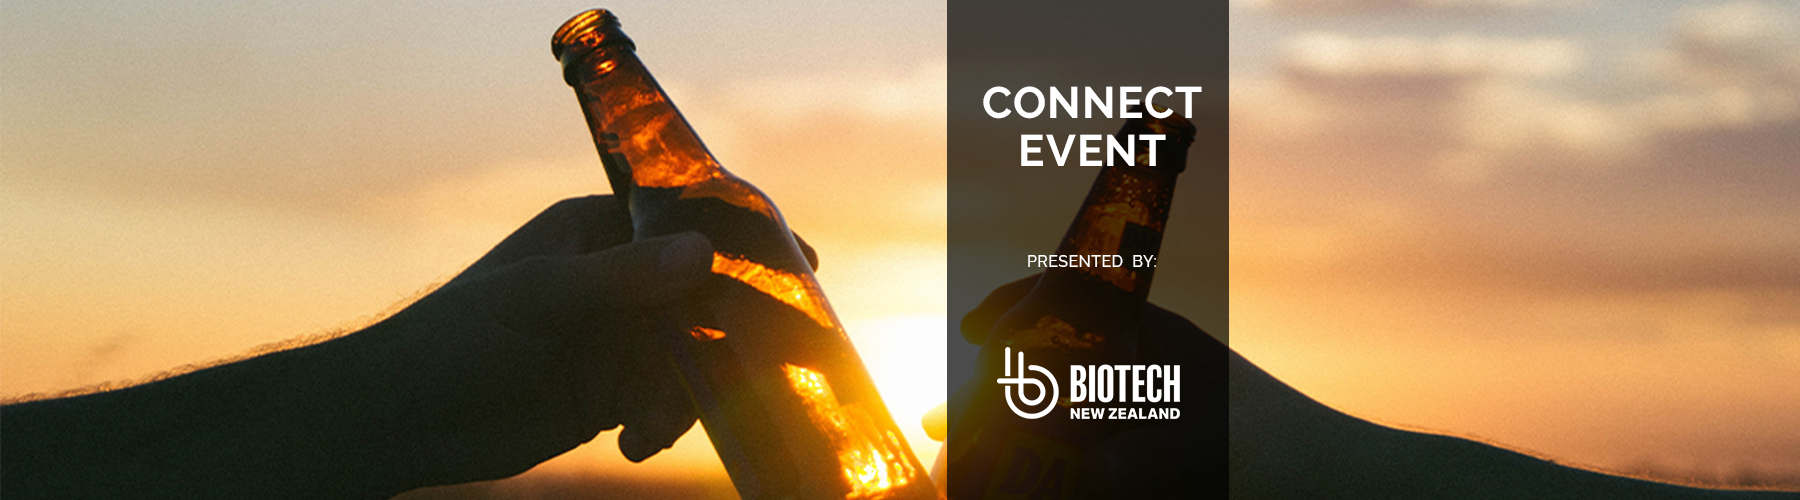 Website-Banner-BioTech-Event